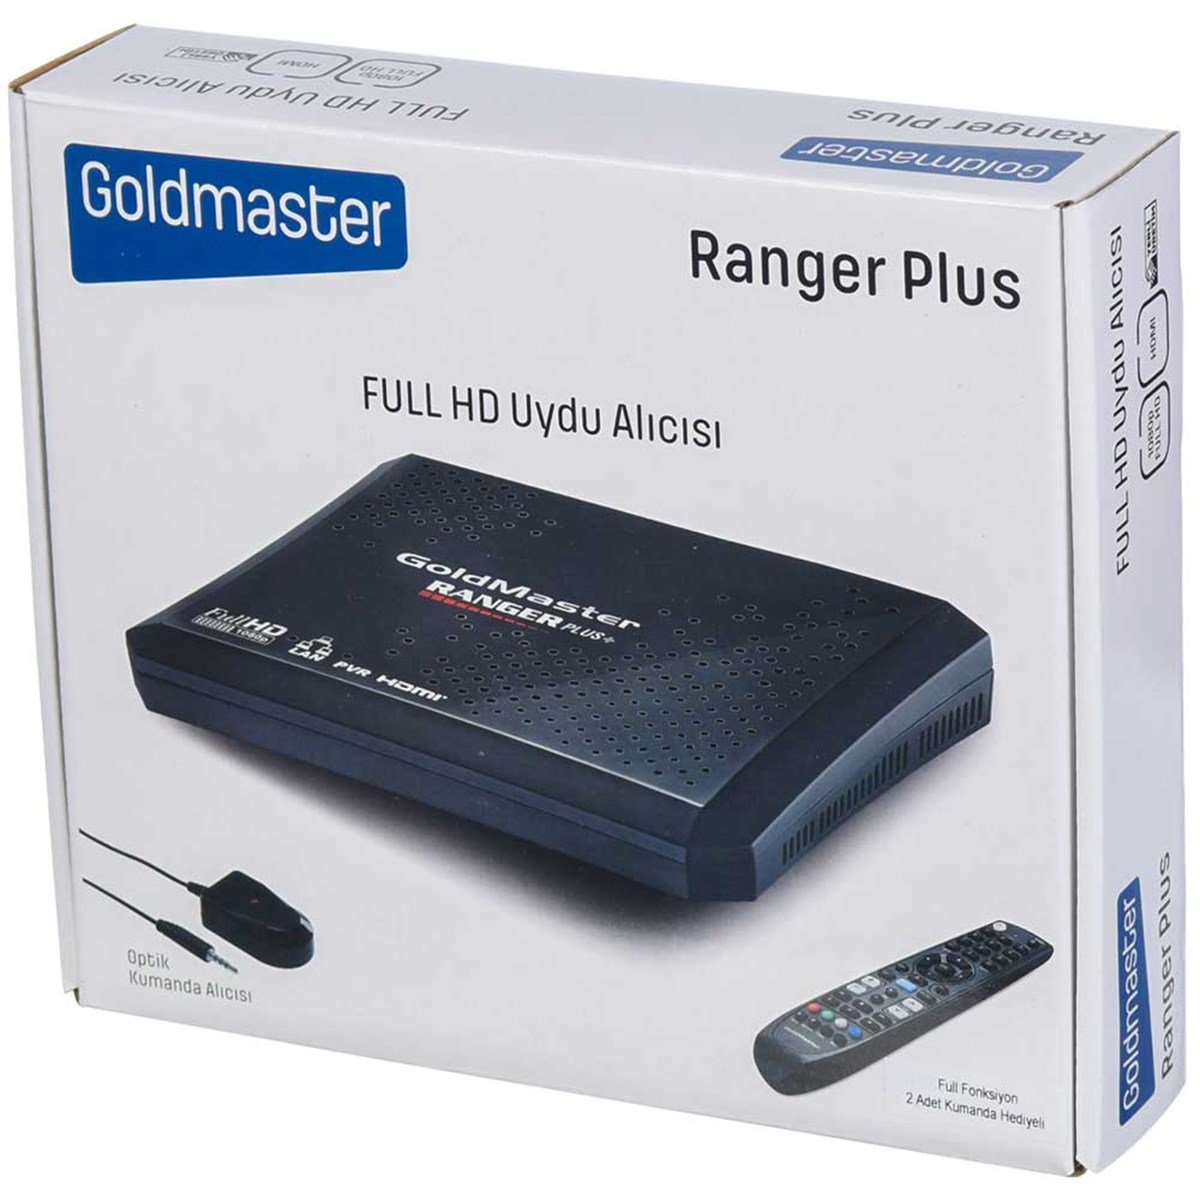 GOLDMASTER Full HD Uydu Alıcısı 10 Yıl Garantili RANGER PLUS